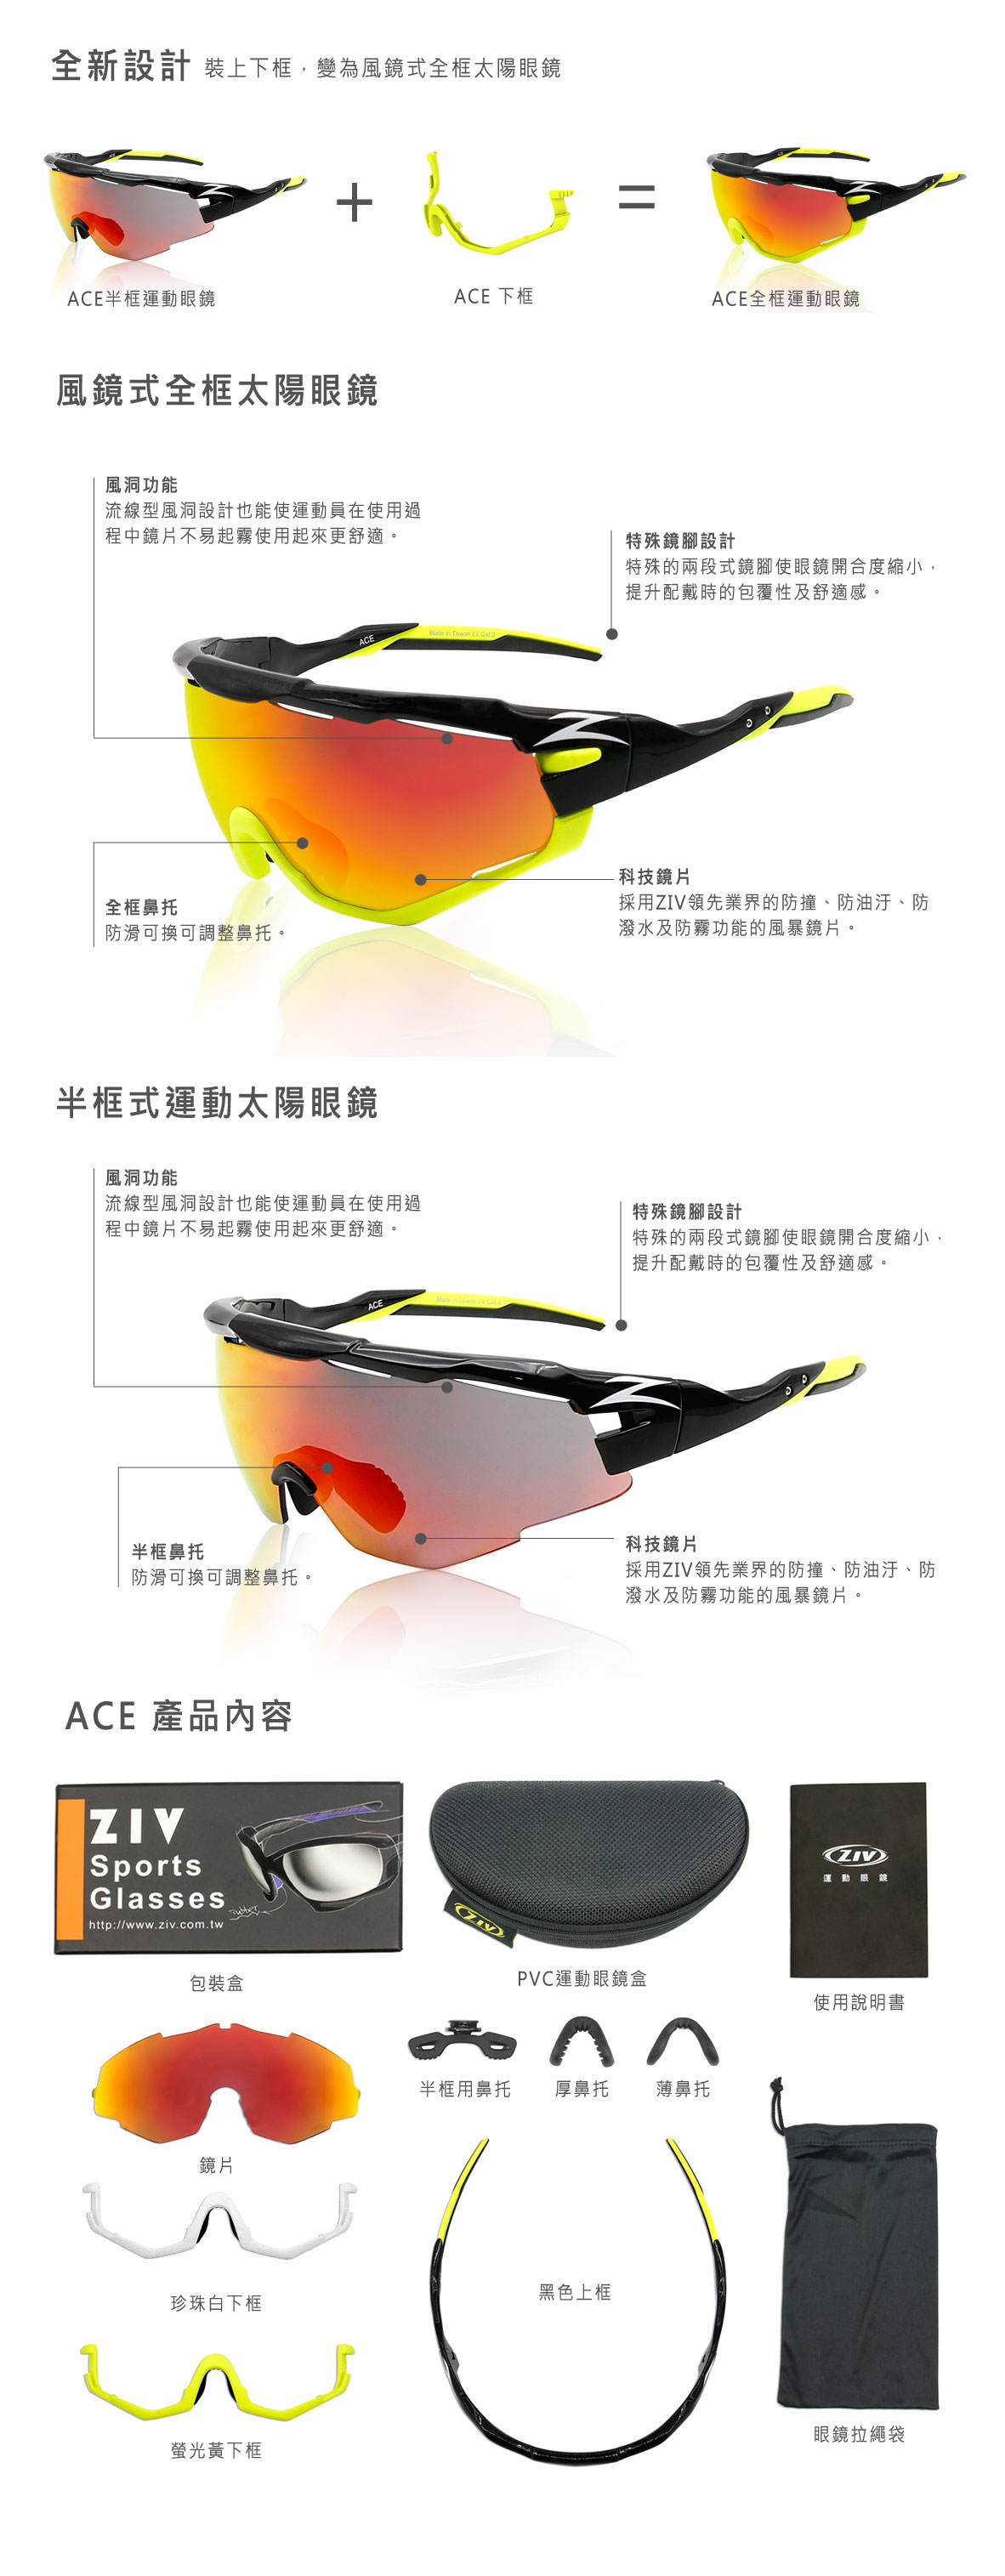 ZIV運動眼鏡,ACE眼鏡說明, ACE, ZIV Sunglasses